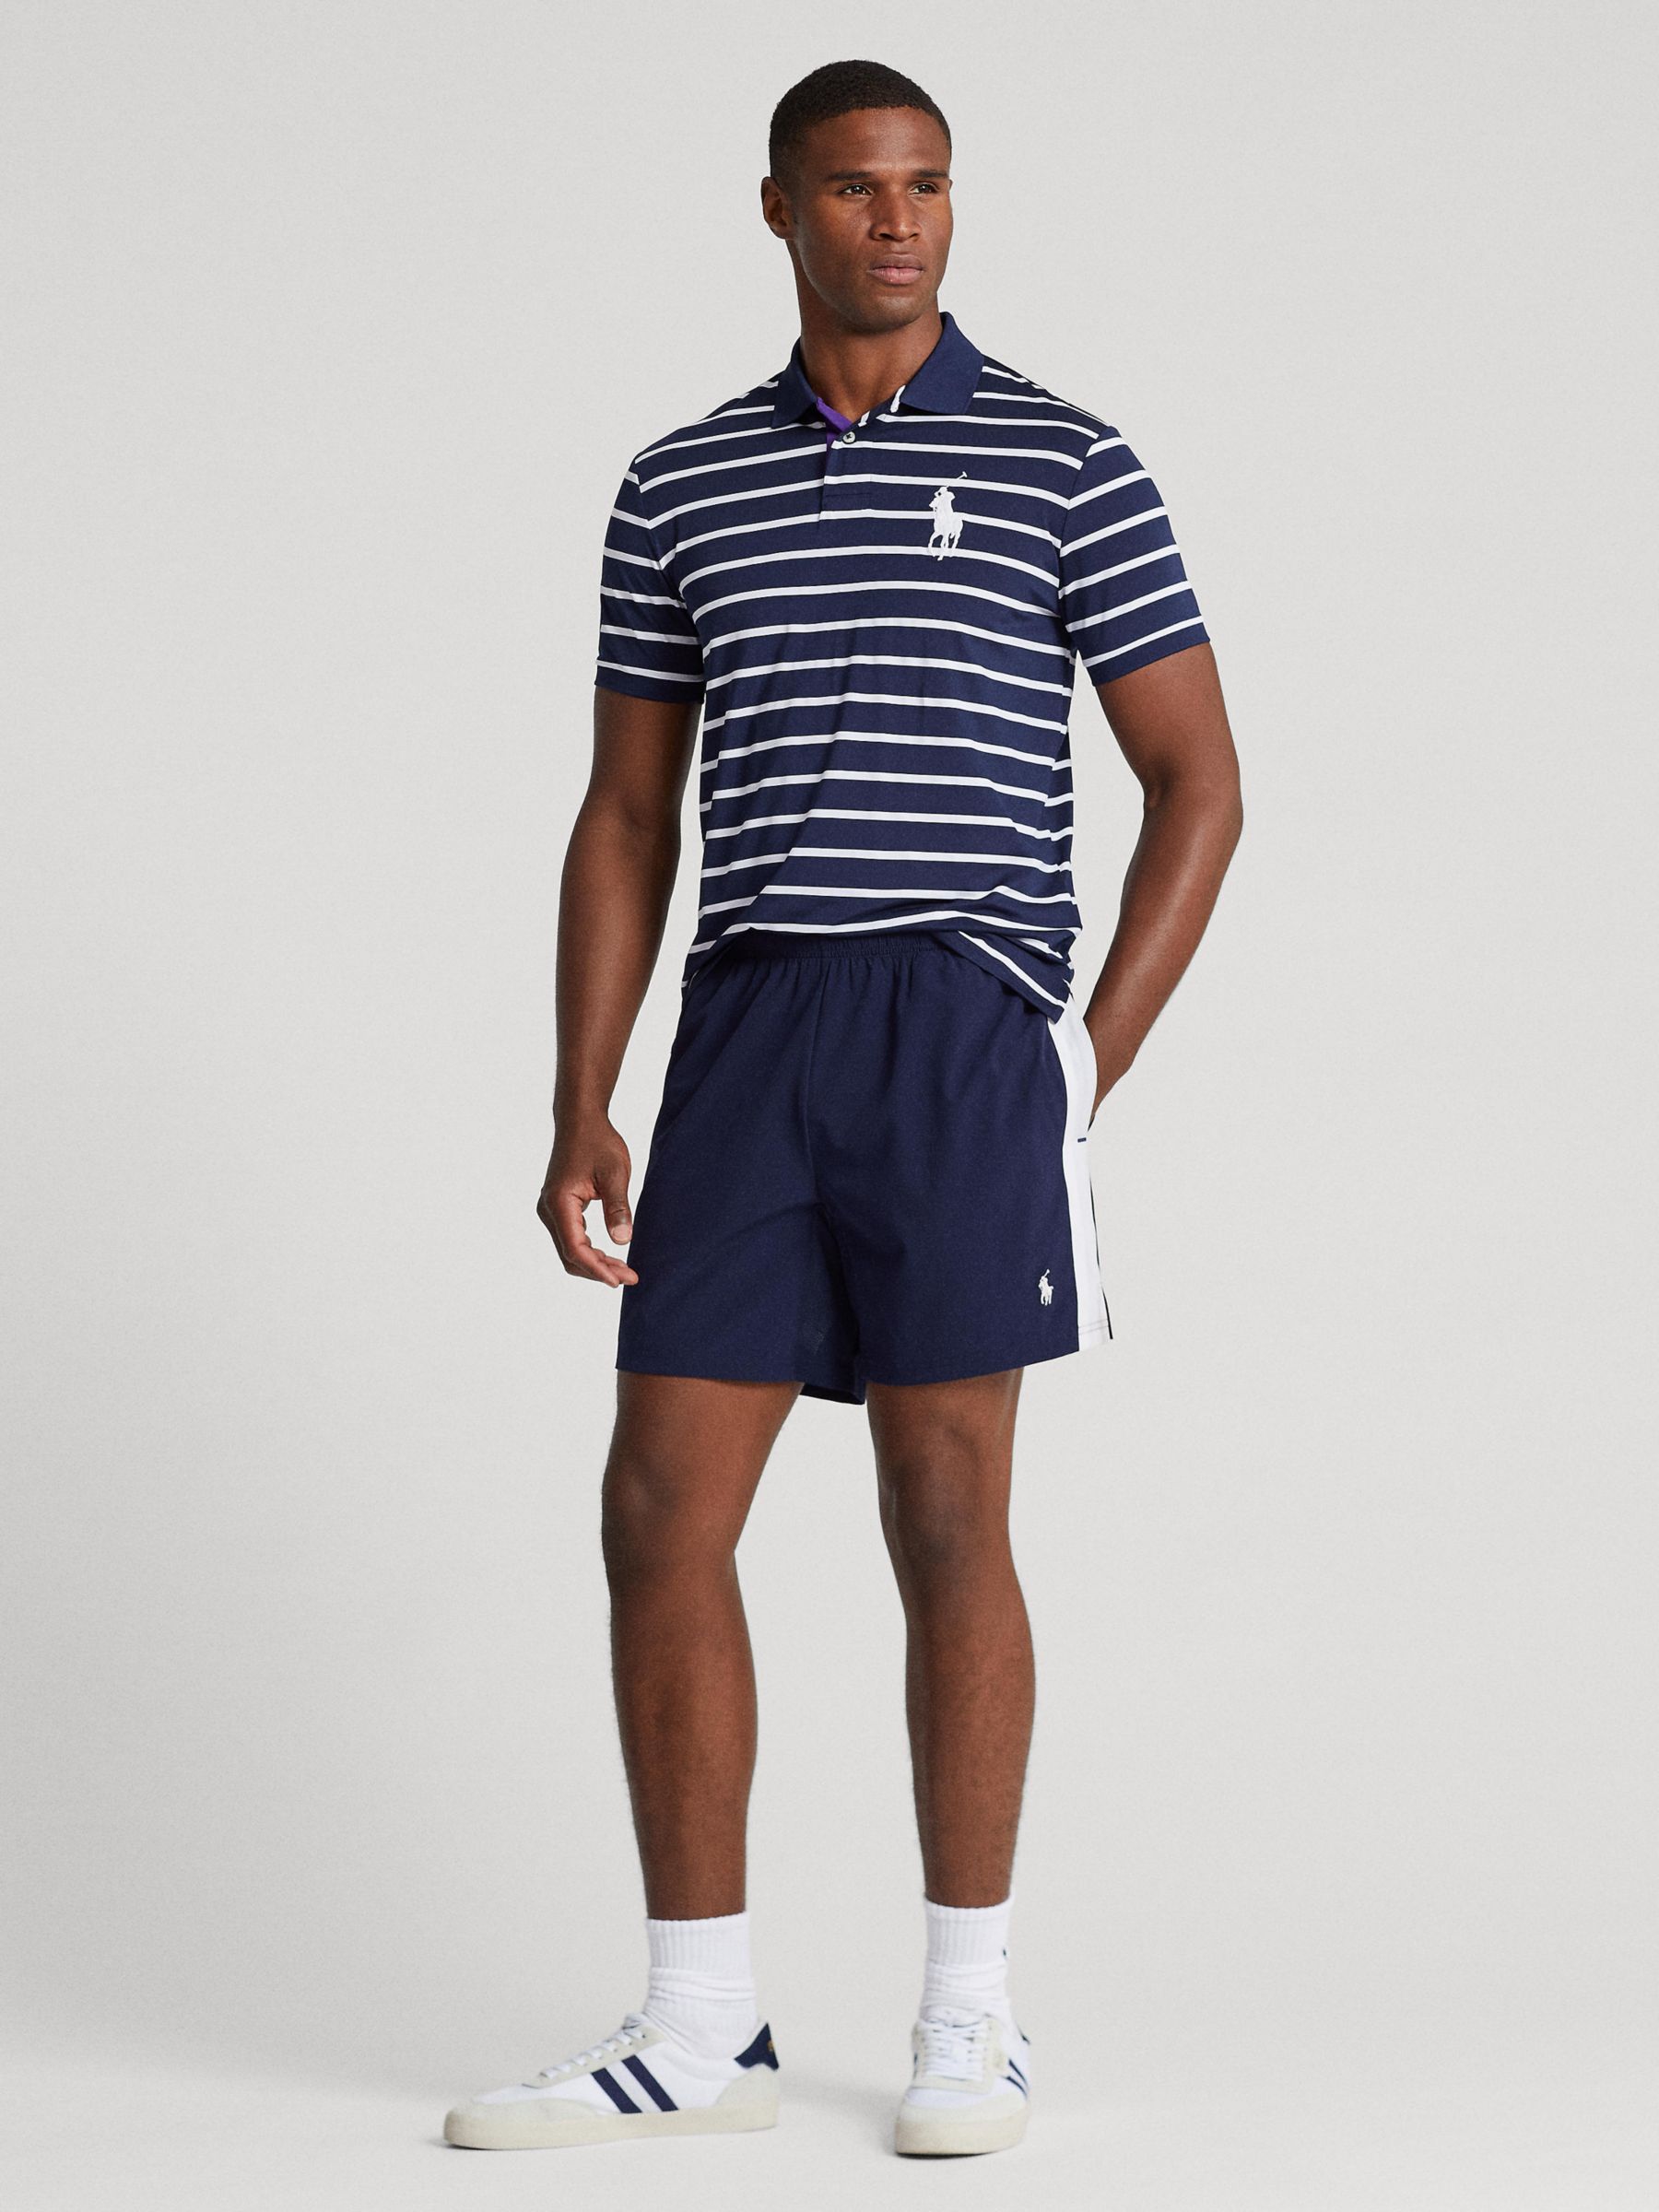 The Wimbledon Online Shop ︳ Wimbledon x Polo Ralph Lauren Men's